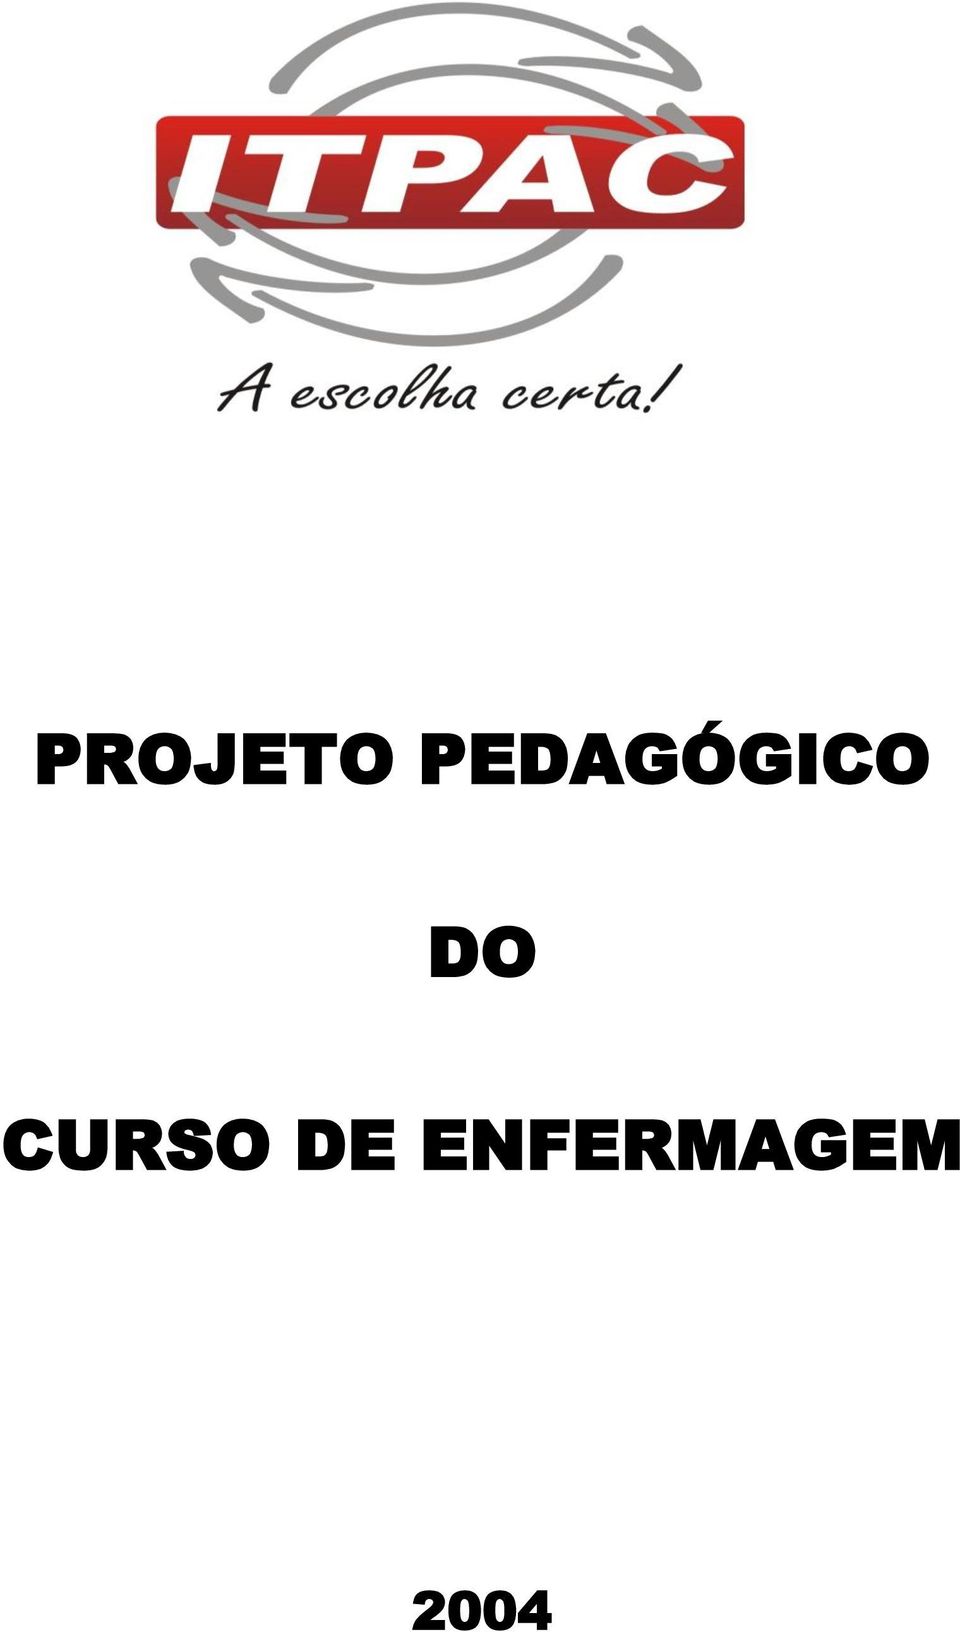 DO CURSO DE